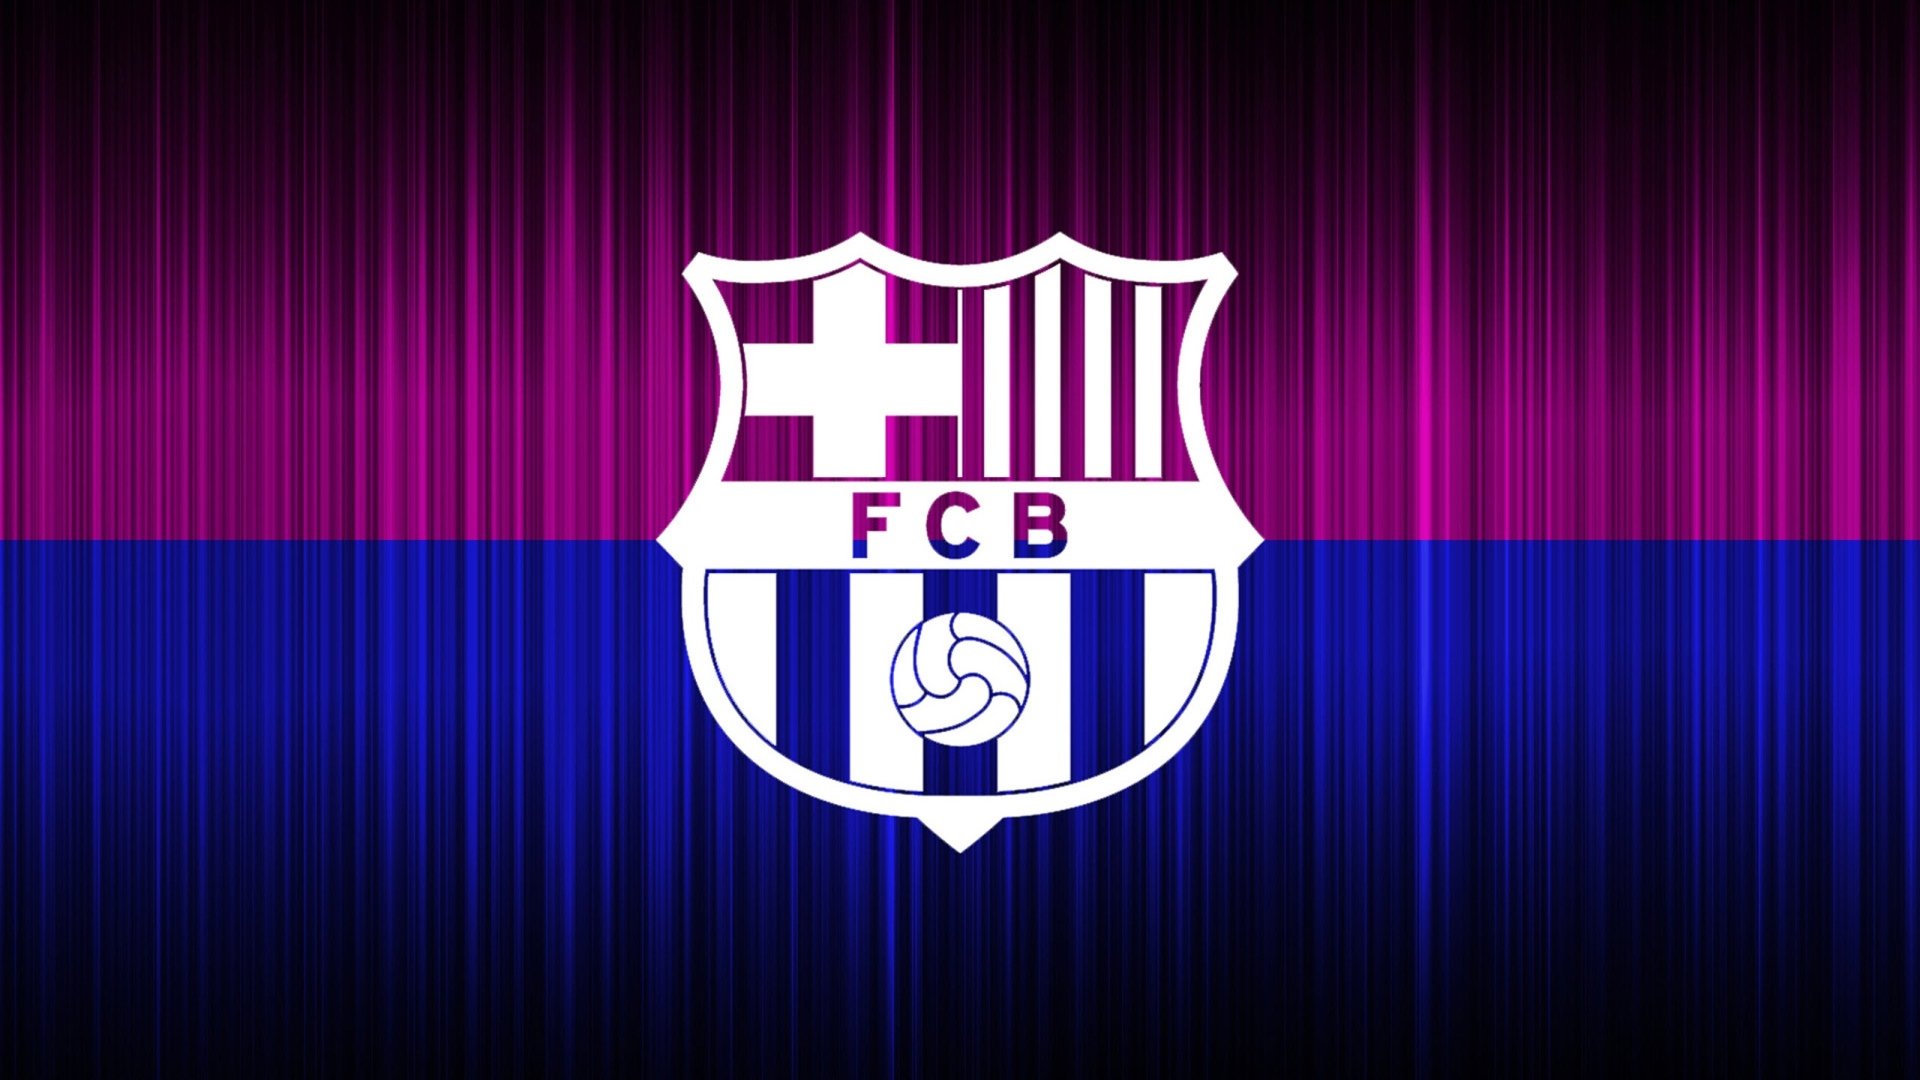 巴塞罗那-欧洲足球俱乐部高清壁纸预览 | 10wallpaper.com